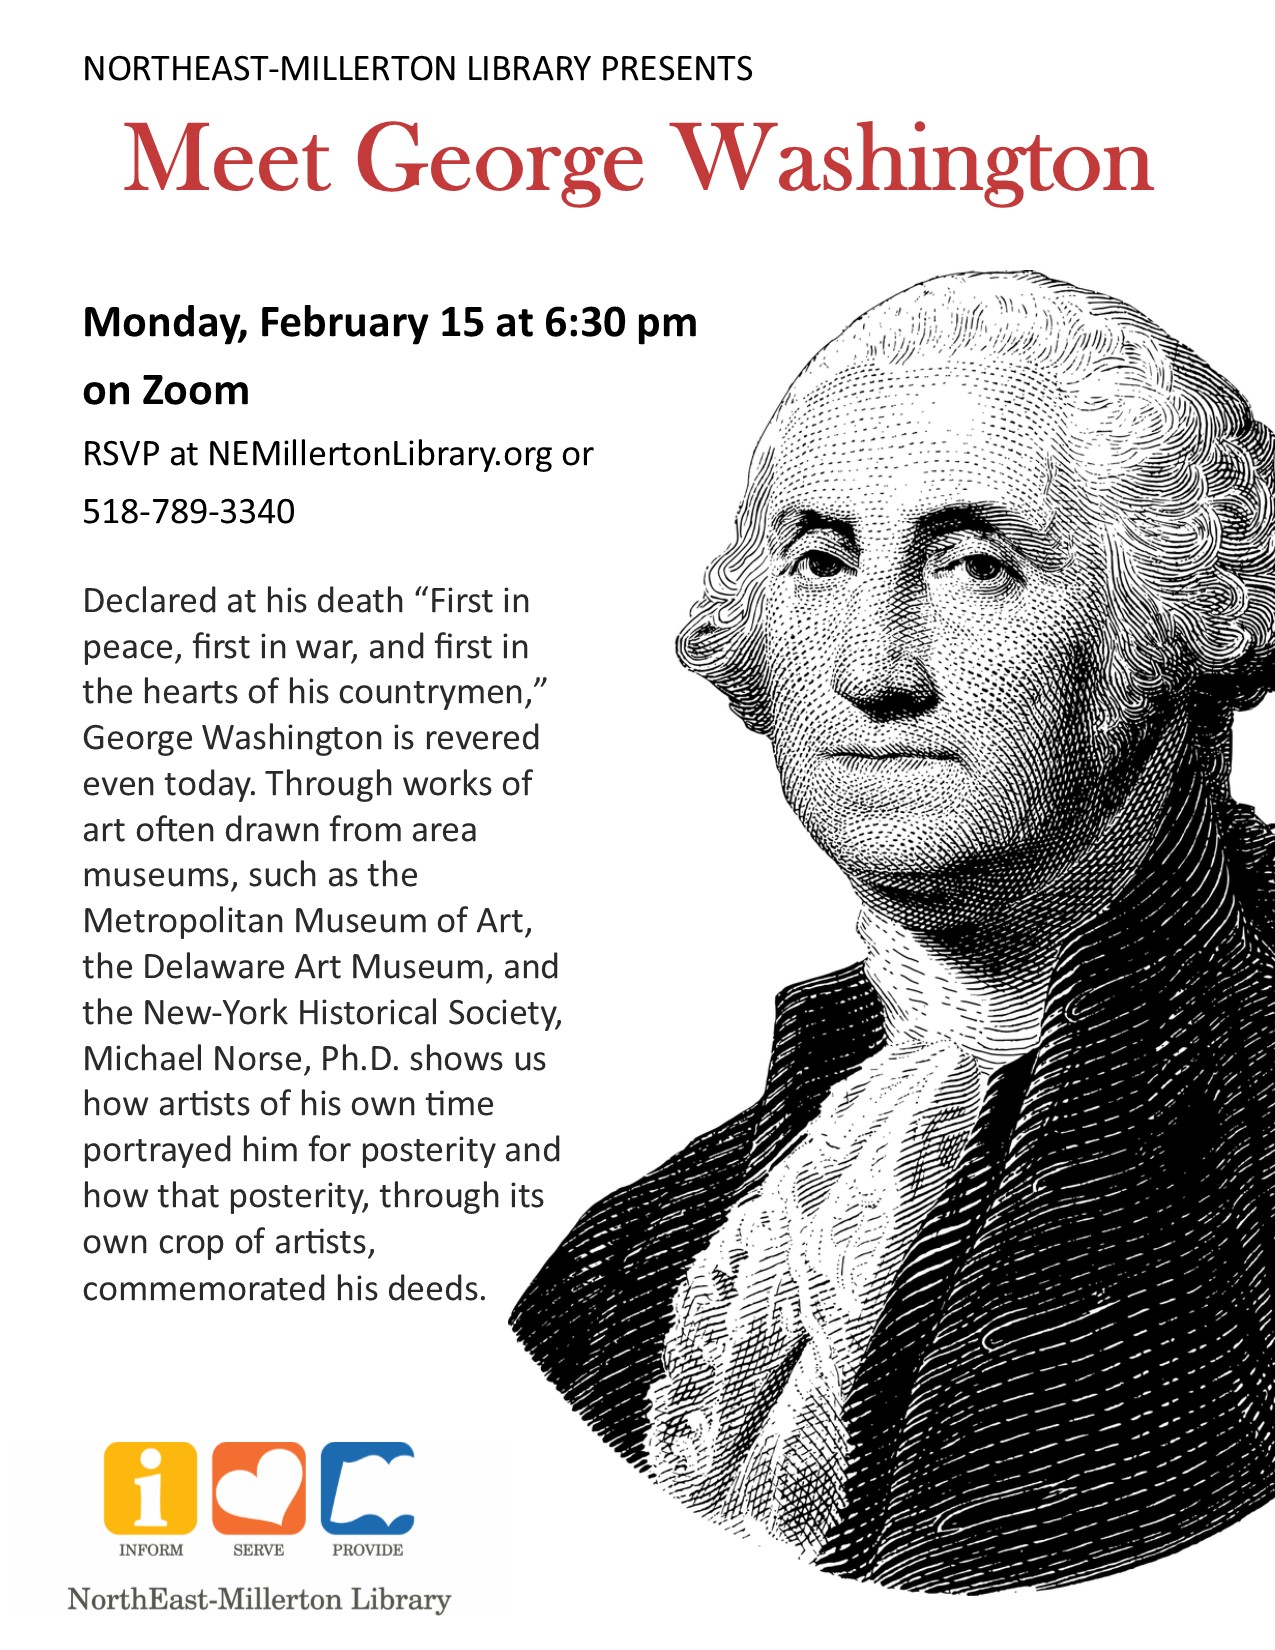 Meet Washington  2/15 at 6:30 pm RSVP